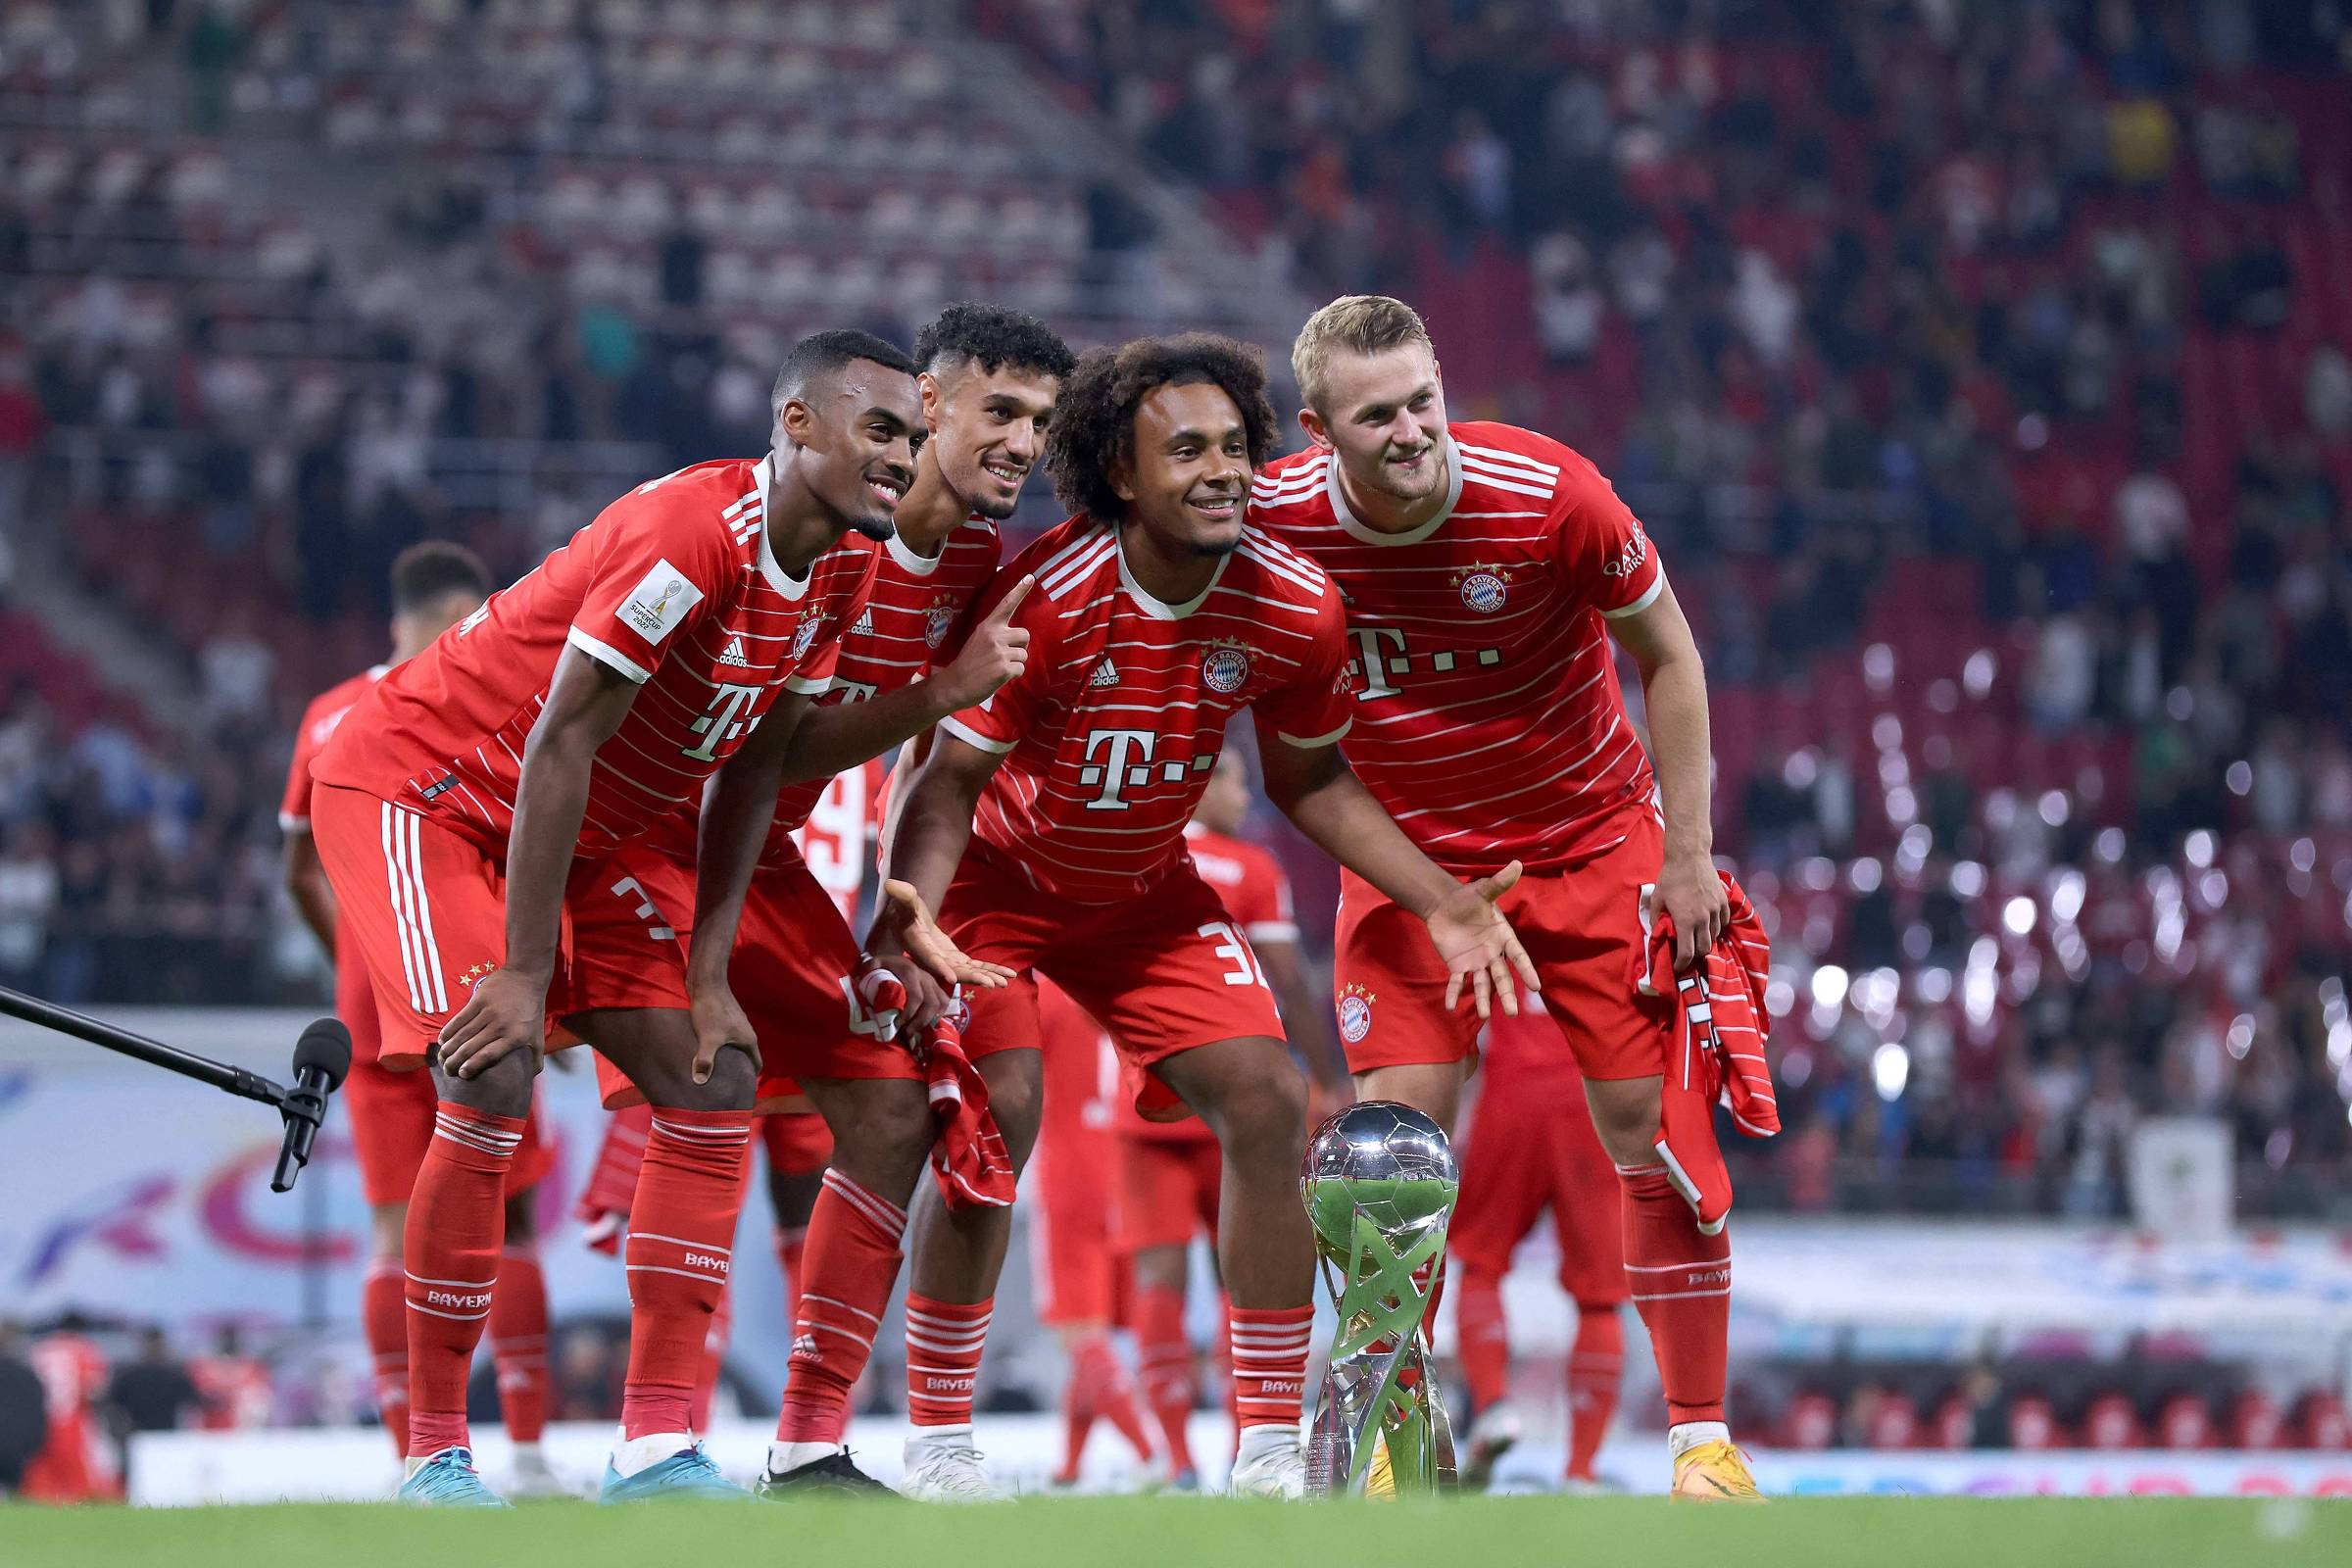 La domination du Bayern renforce le mythe de la compétition dans le football – 20/08/2022 – Sport